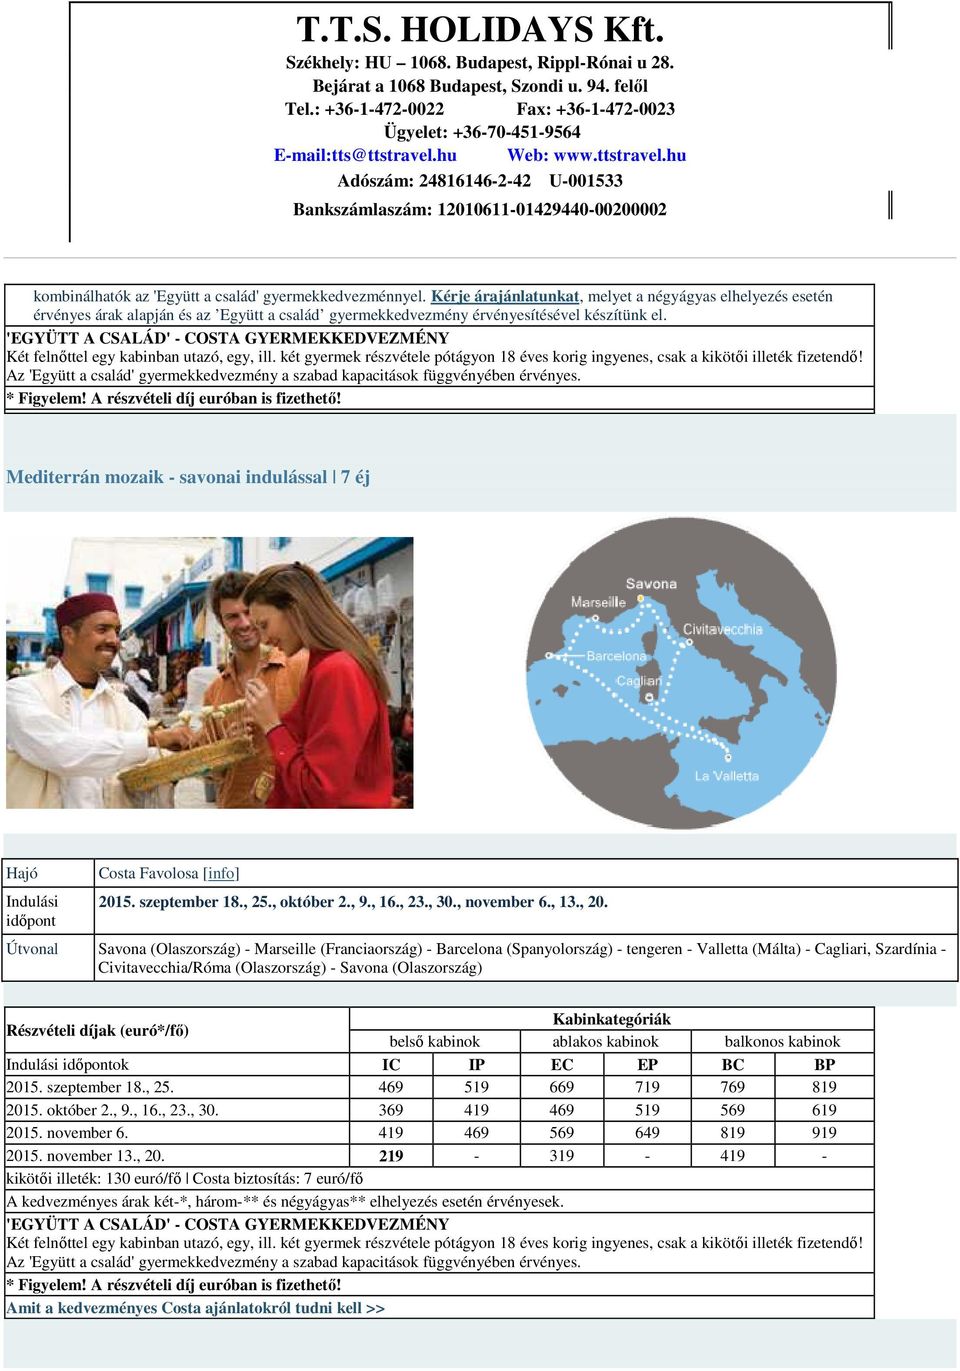 Mediterrán mozaik - savonai indulással 7 éj időpont Costa Favolosa [info] 2015. szeptember 18., 25., október 2., 9., 16., 23., 30., november 6., 13., 20.